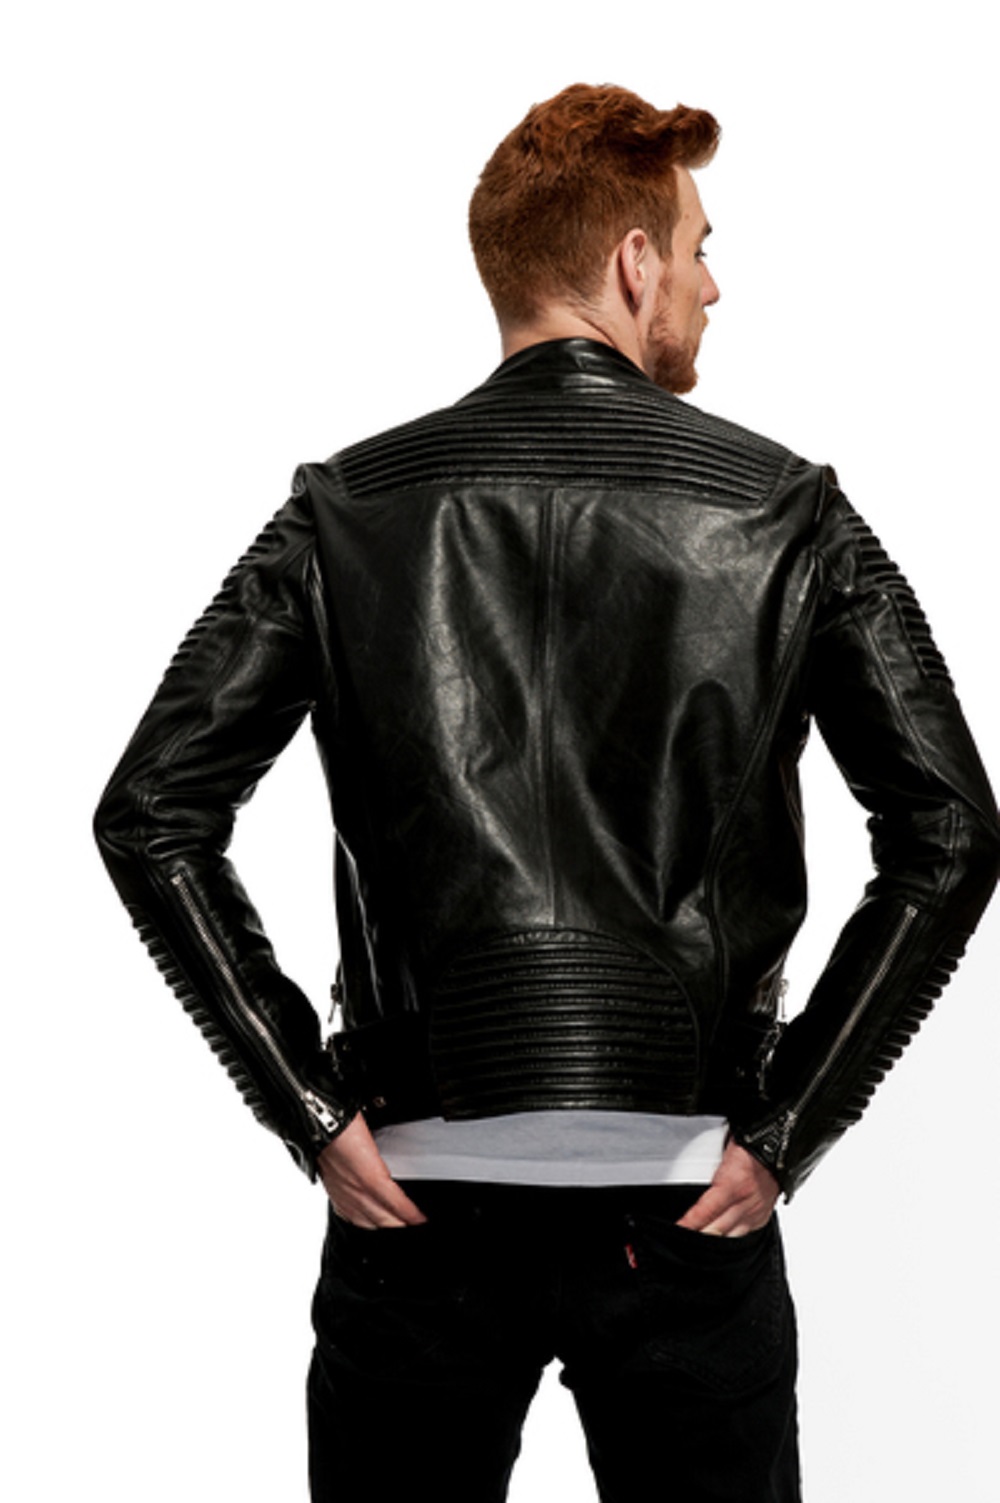 Mason & Cooper Empire Leather Moto Jacket - image 2 of 4